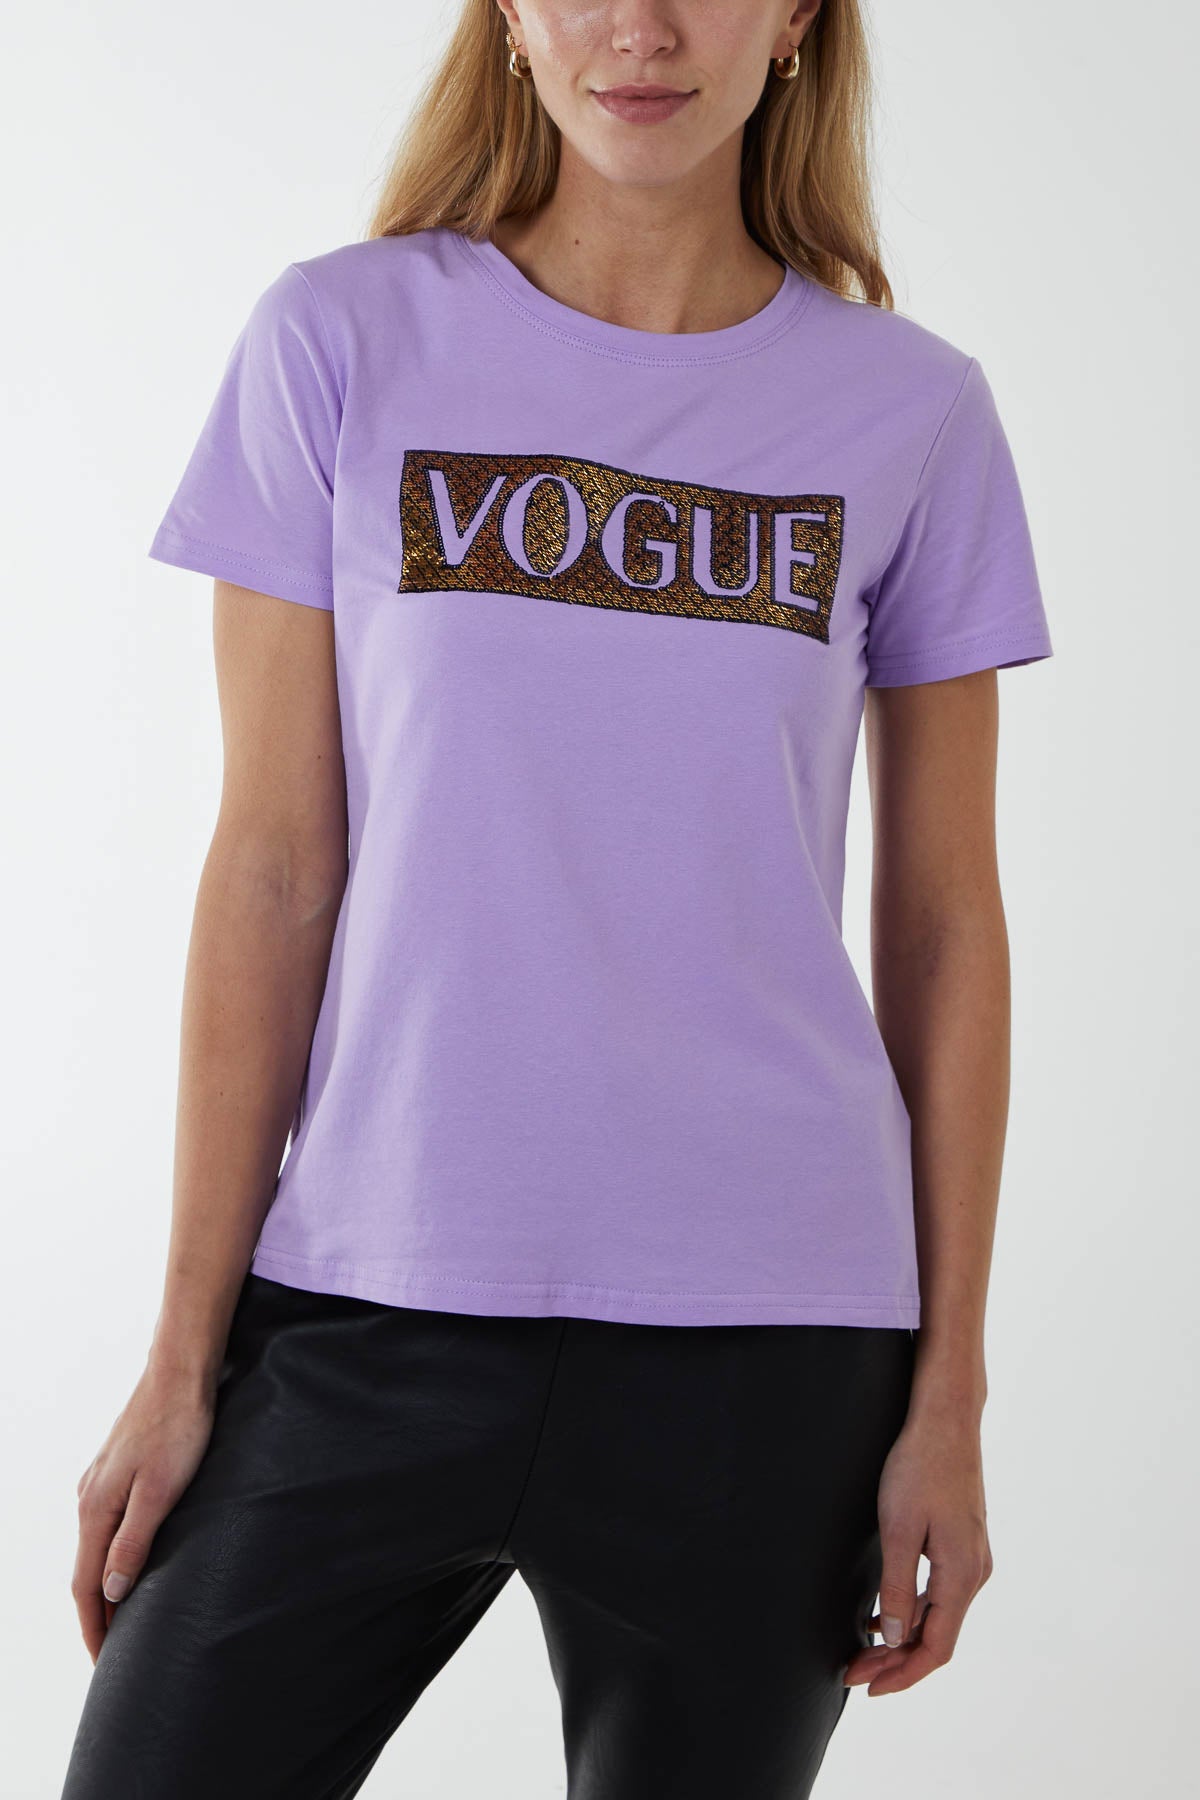 Beaded 'Vogue' T-Shirt